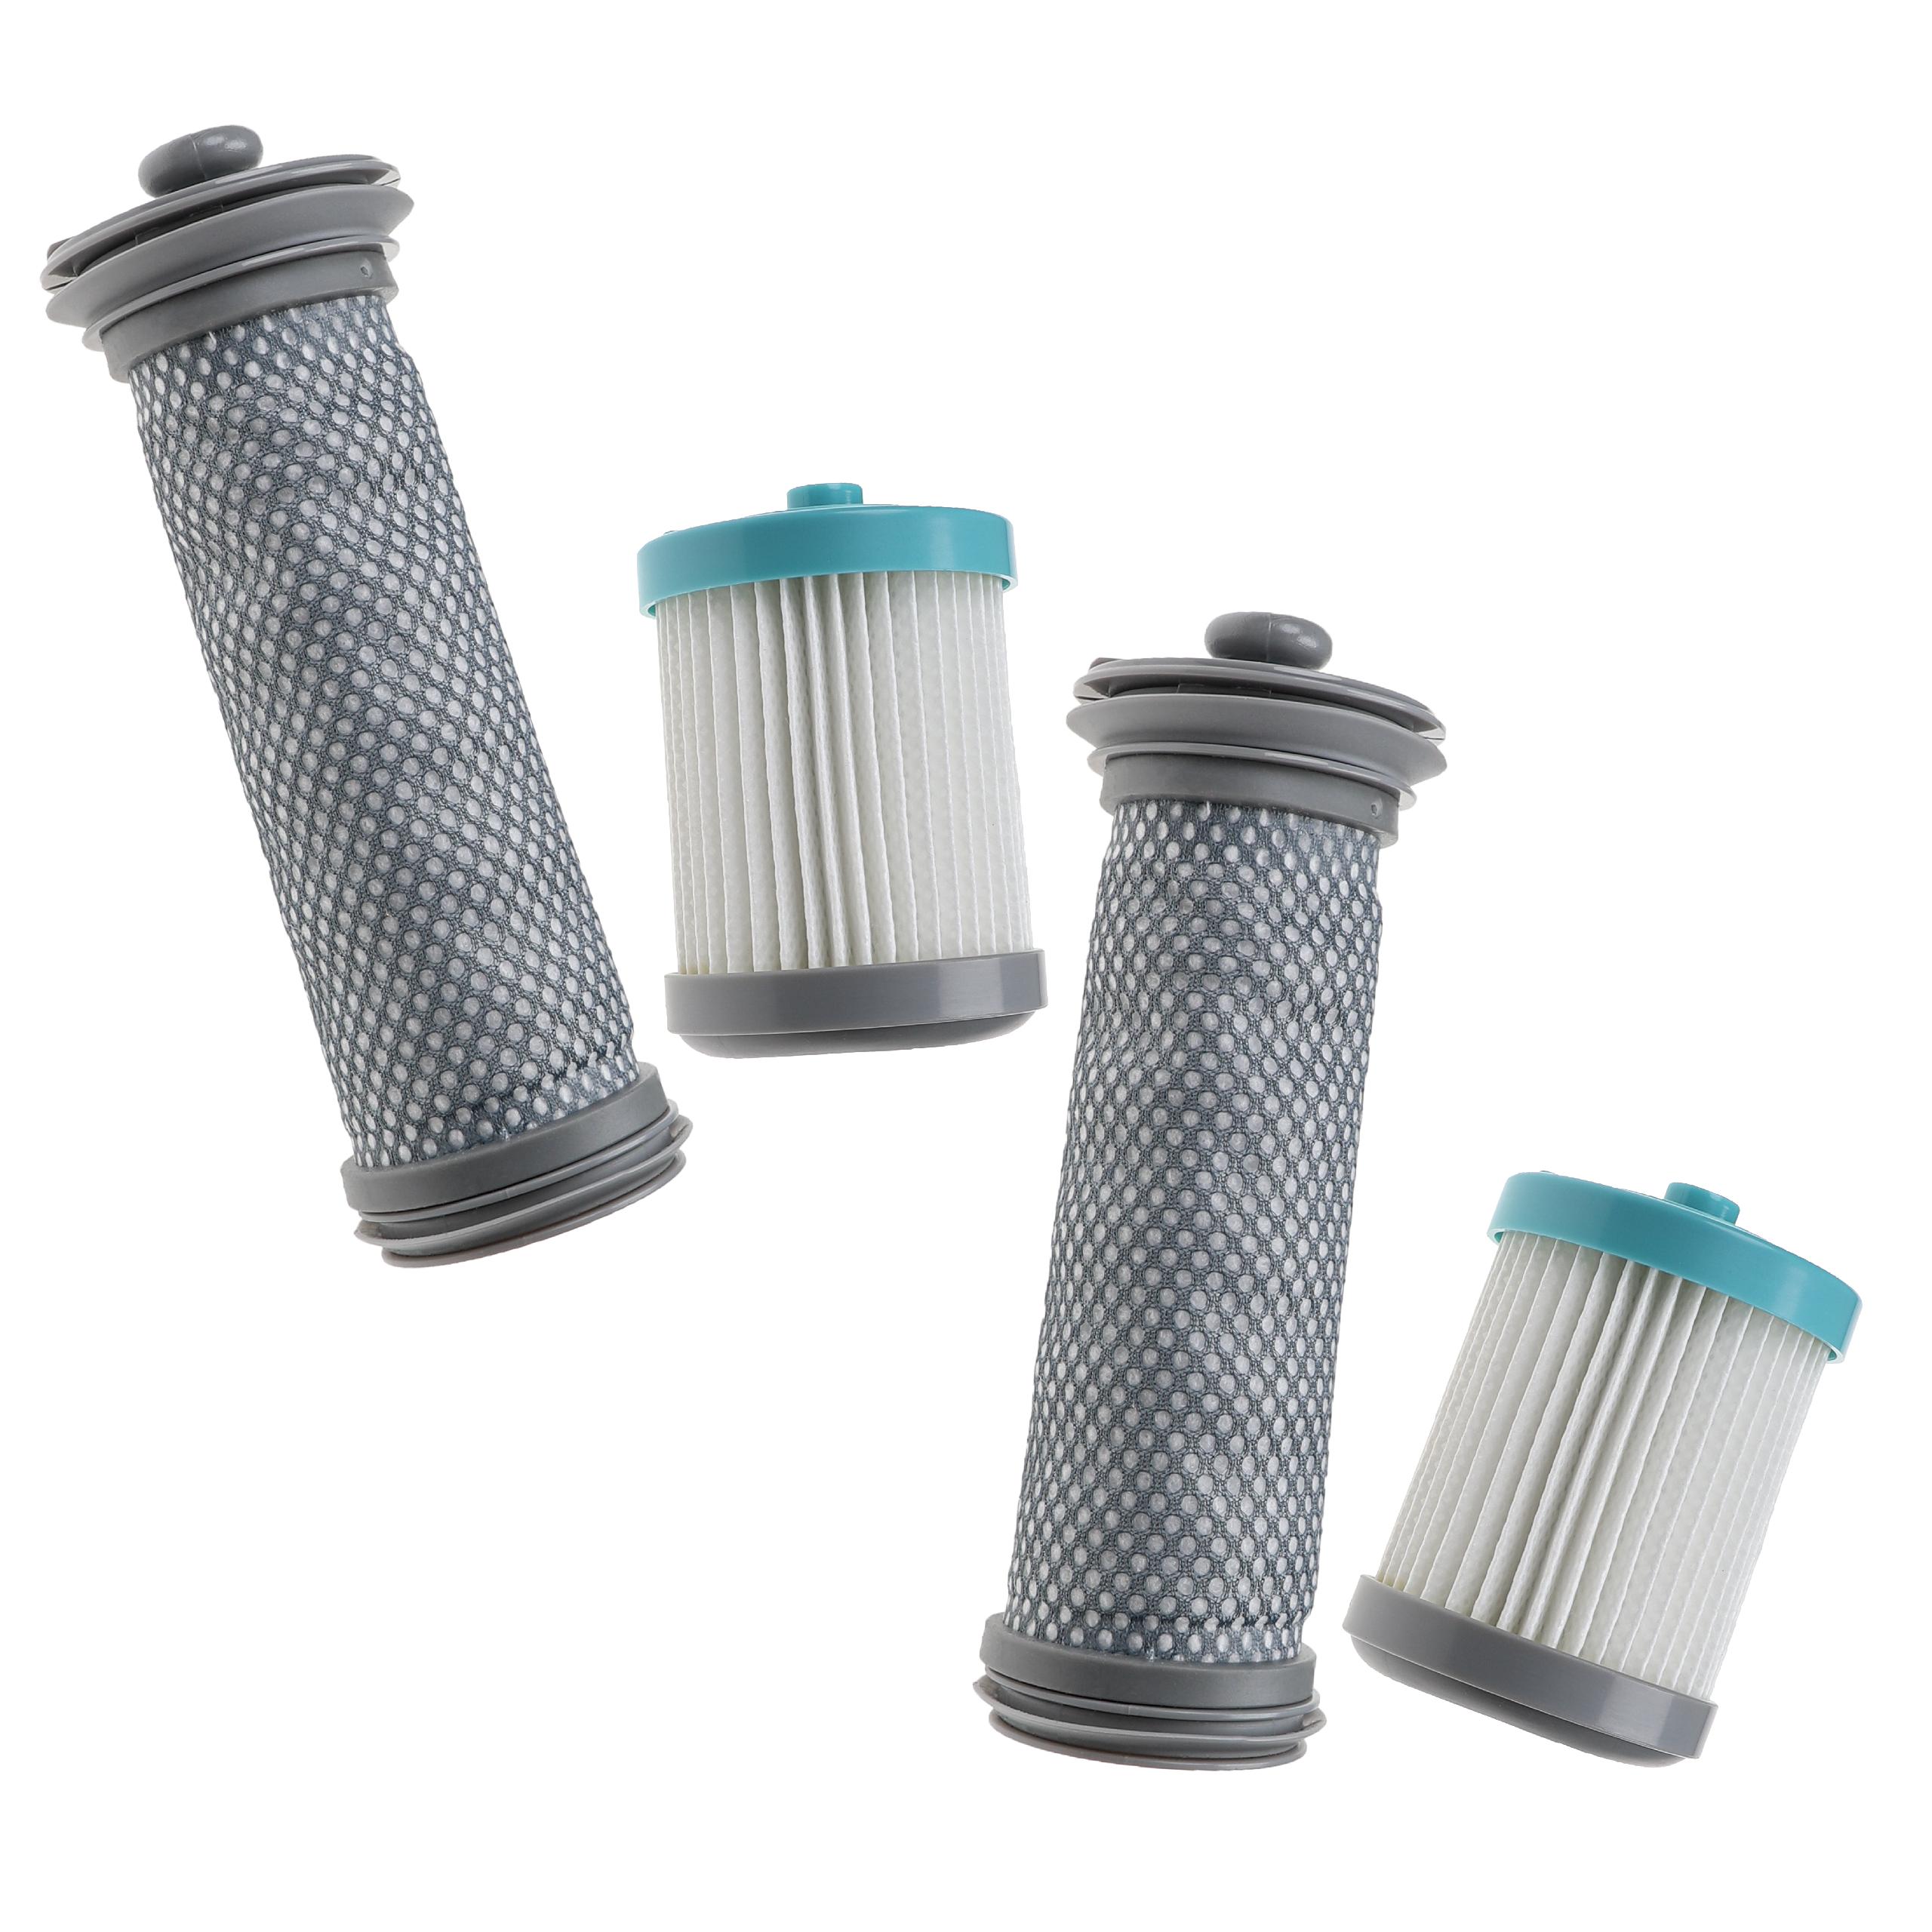 Vhbw Lot de 4 filtres compatible avec Tineco Pure One S11, S11, S11 Tango  EX aspirateur (filtre pré-moteur HEPA, filtre moteur HEPA)